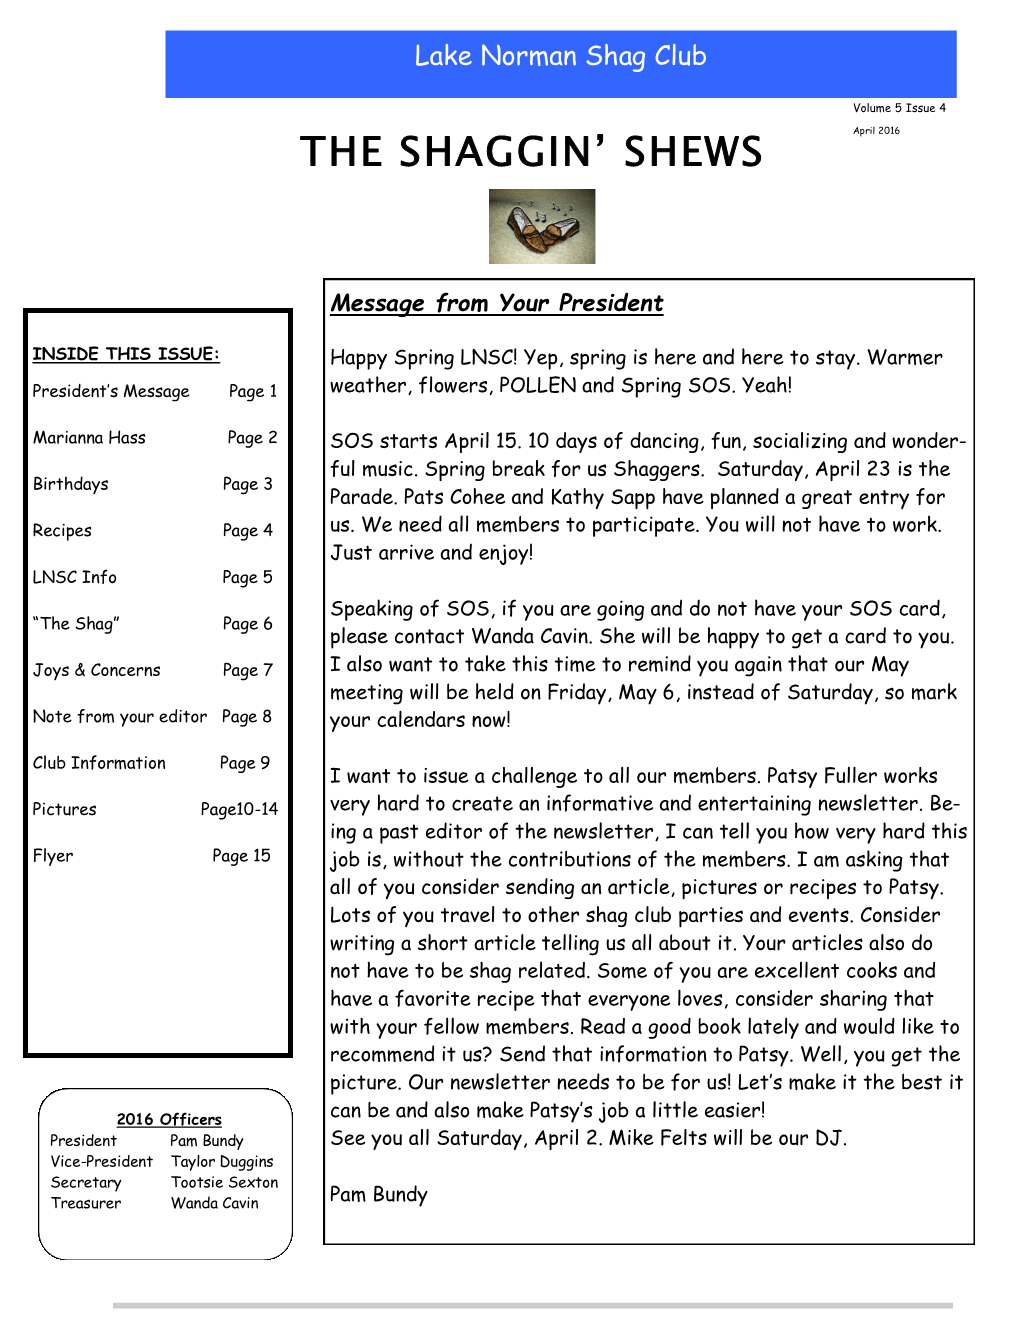 The Shaggin' Shews